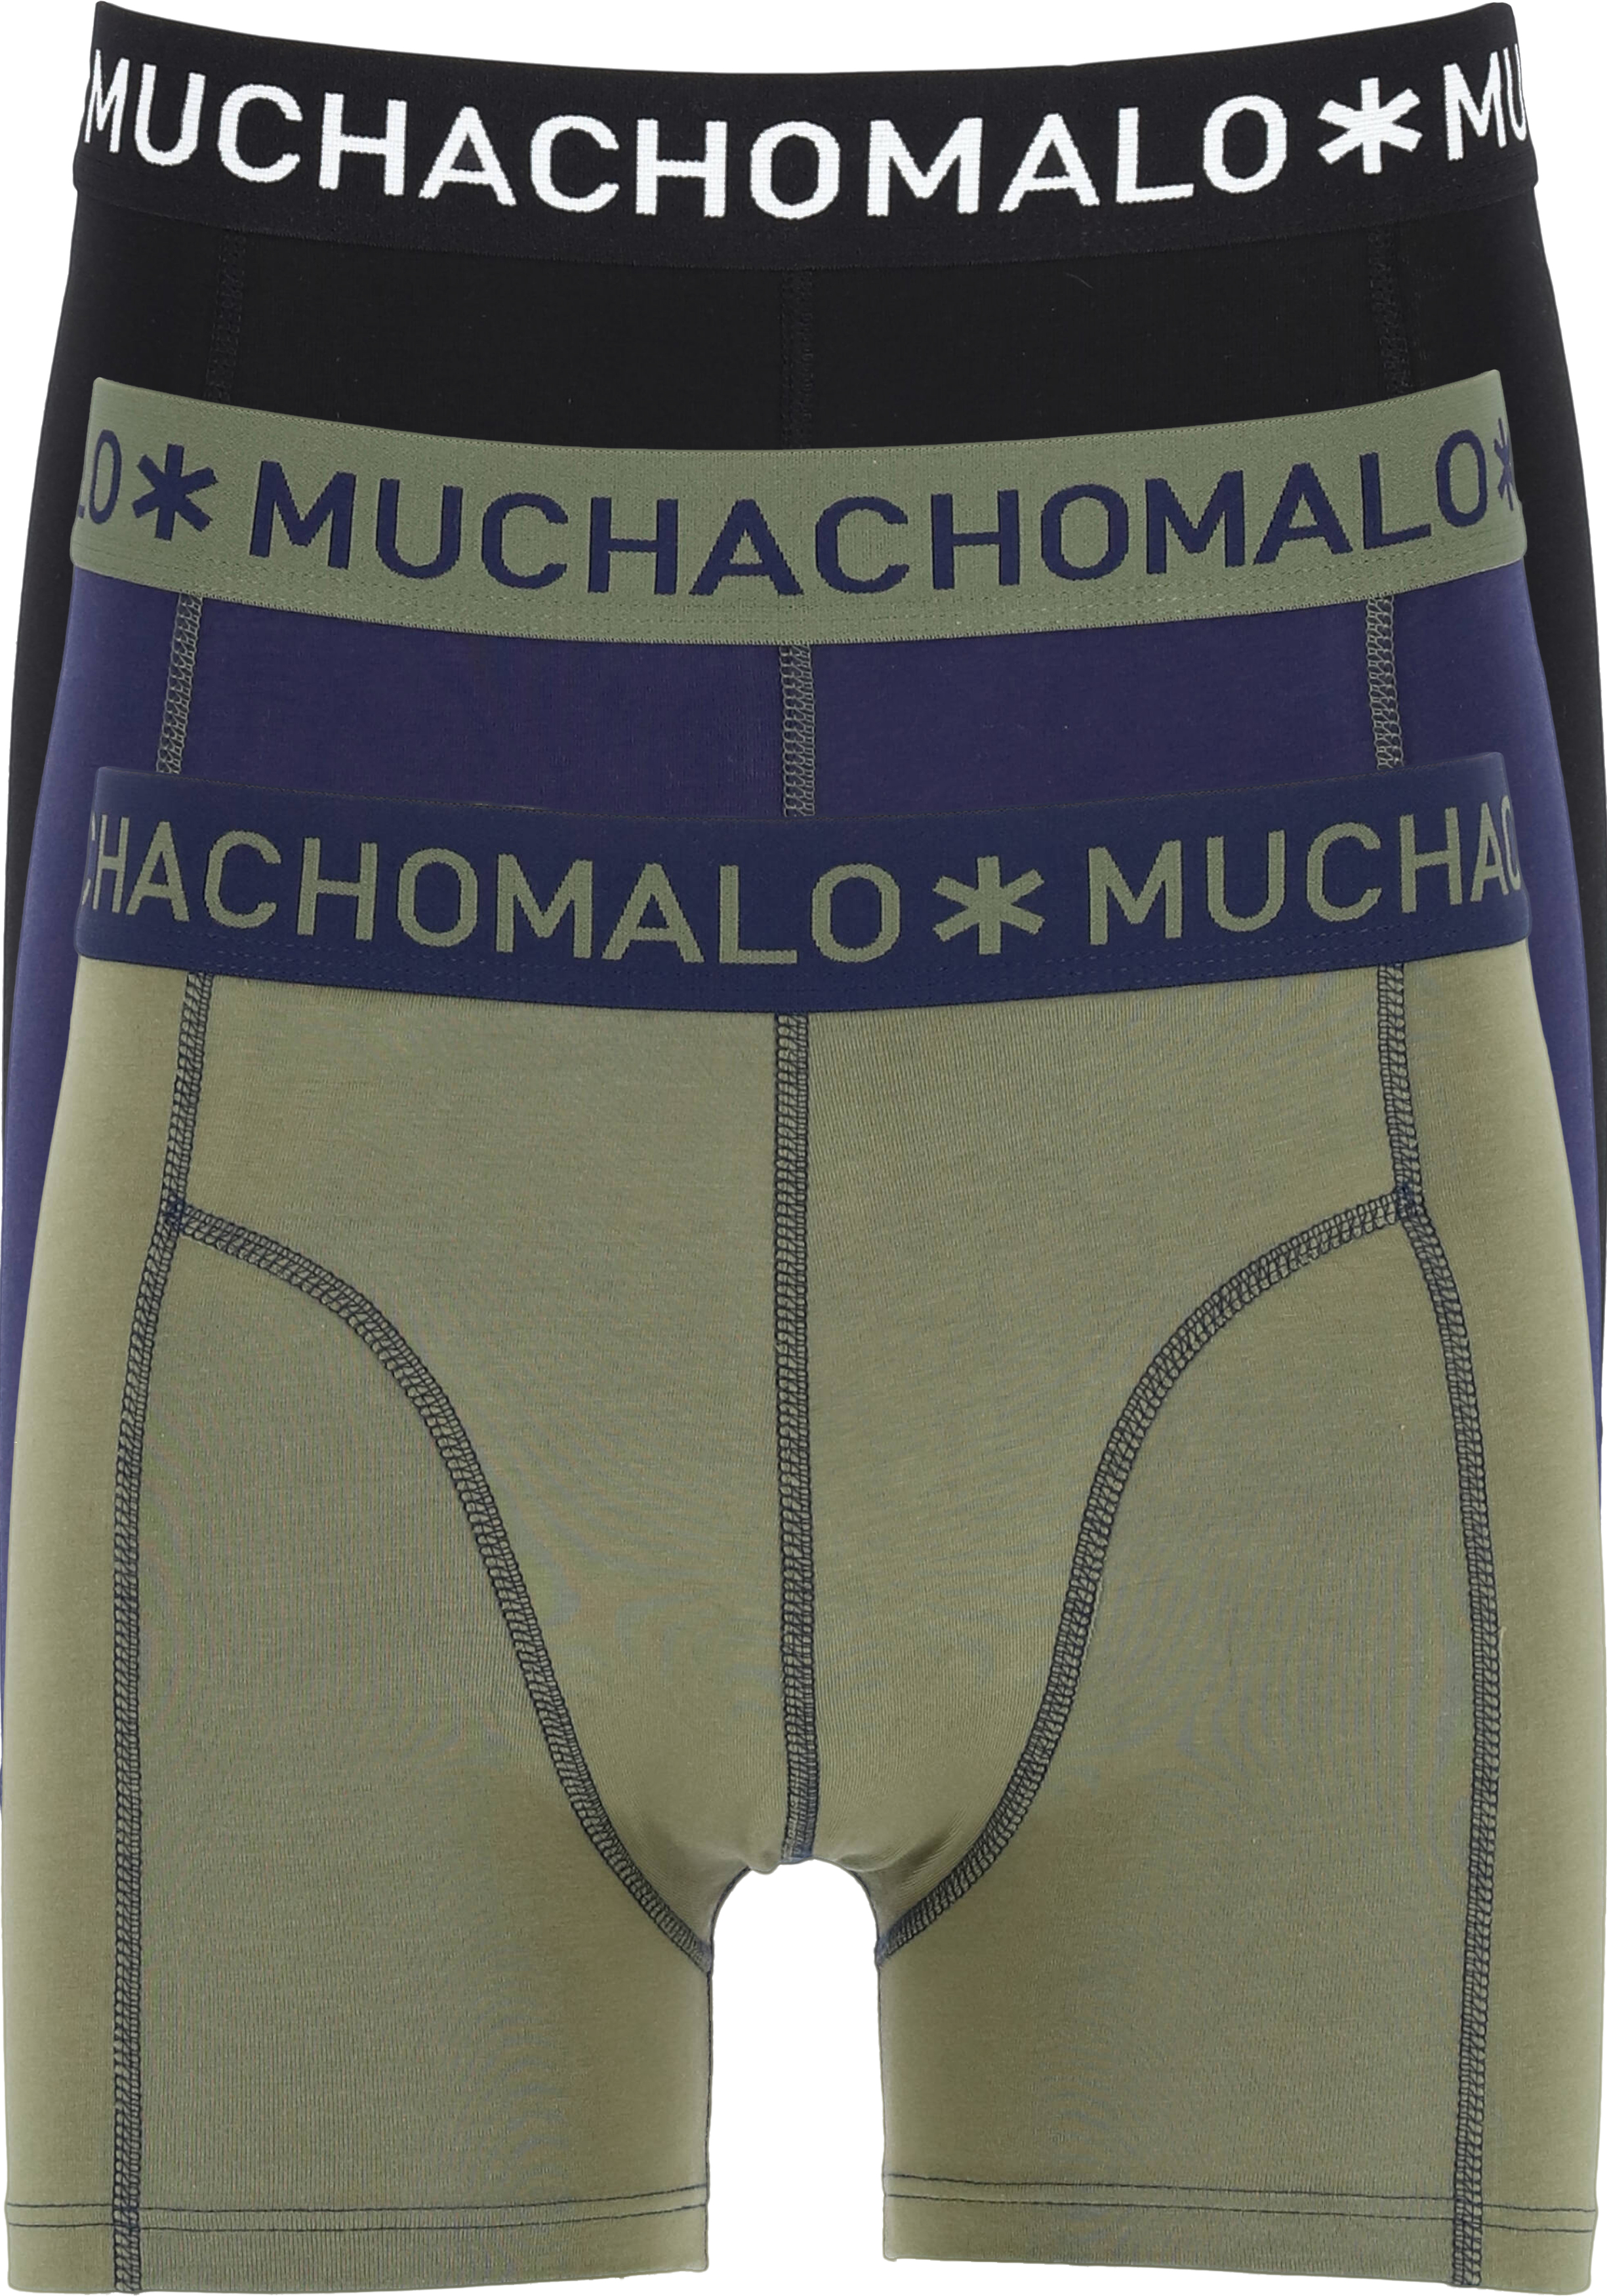 straal salon Aanhankelijk Muchachomalo boxershorts, 3-pack, blauw, groen, zwart - Gratis bezorgd